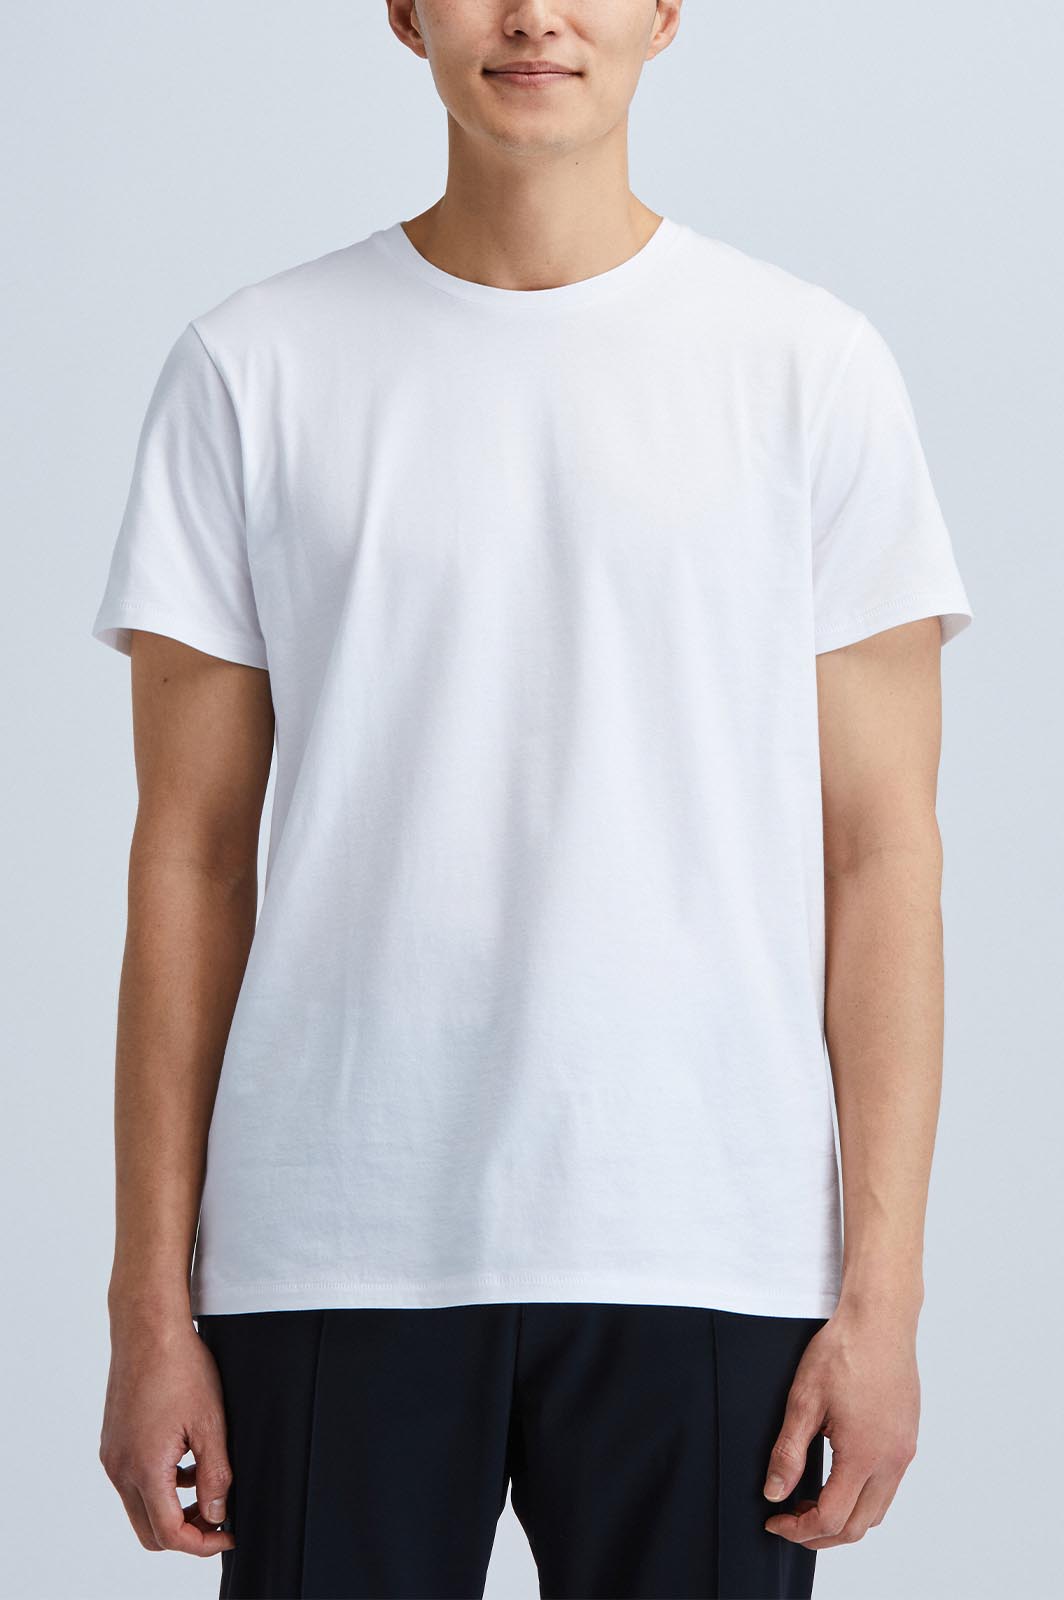 beton bytte rundt Pjece Sustainable Men's White Plain T-shirt - State of Matter Apparel